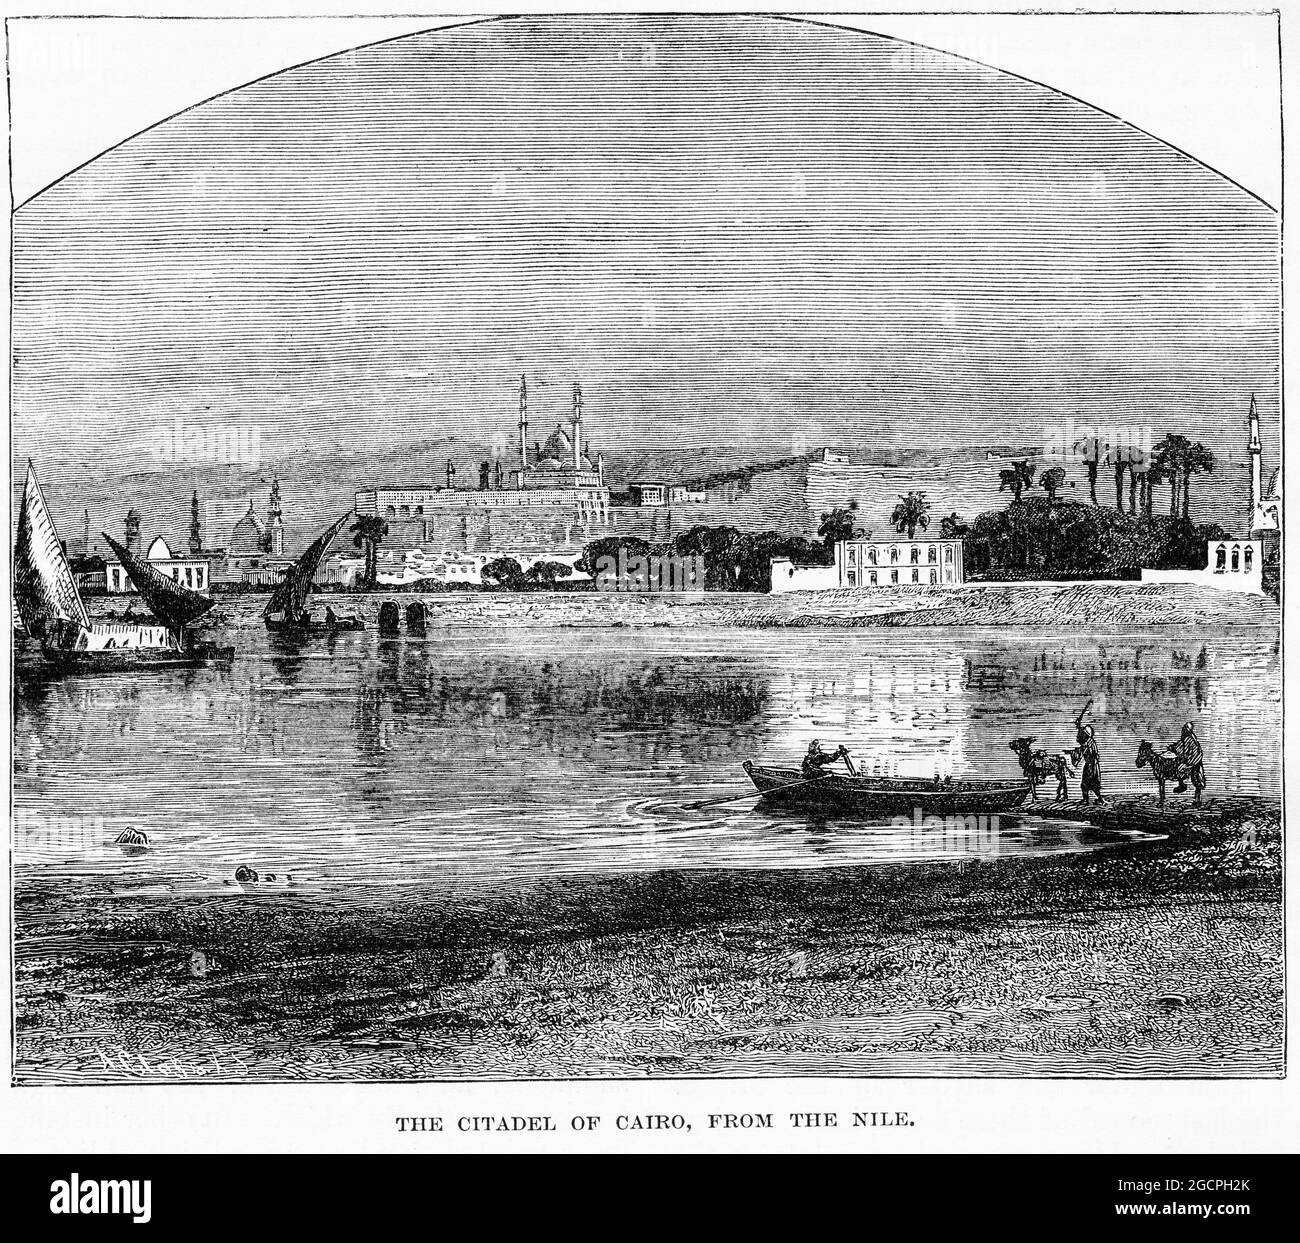 Gravure de la citadelle du Caire en Egypte, d'une publication vers 1880 Banque D'Images